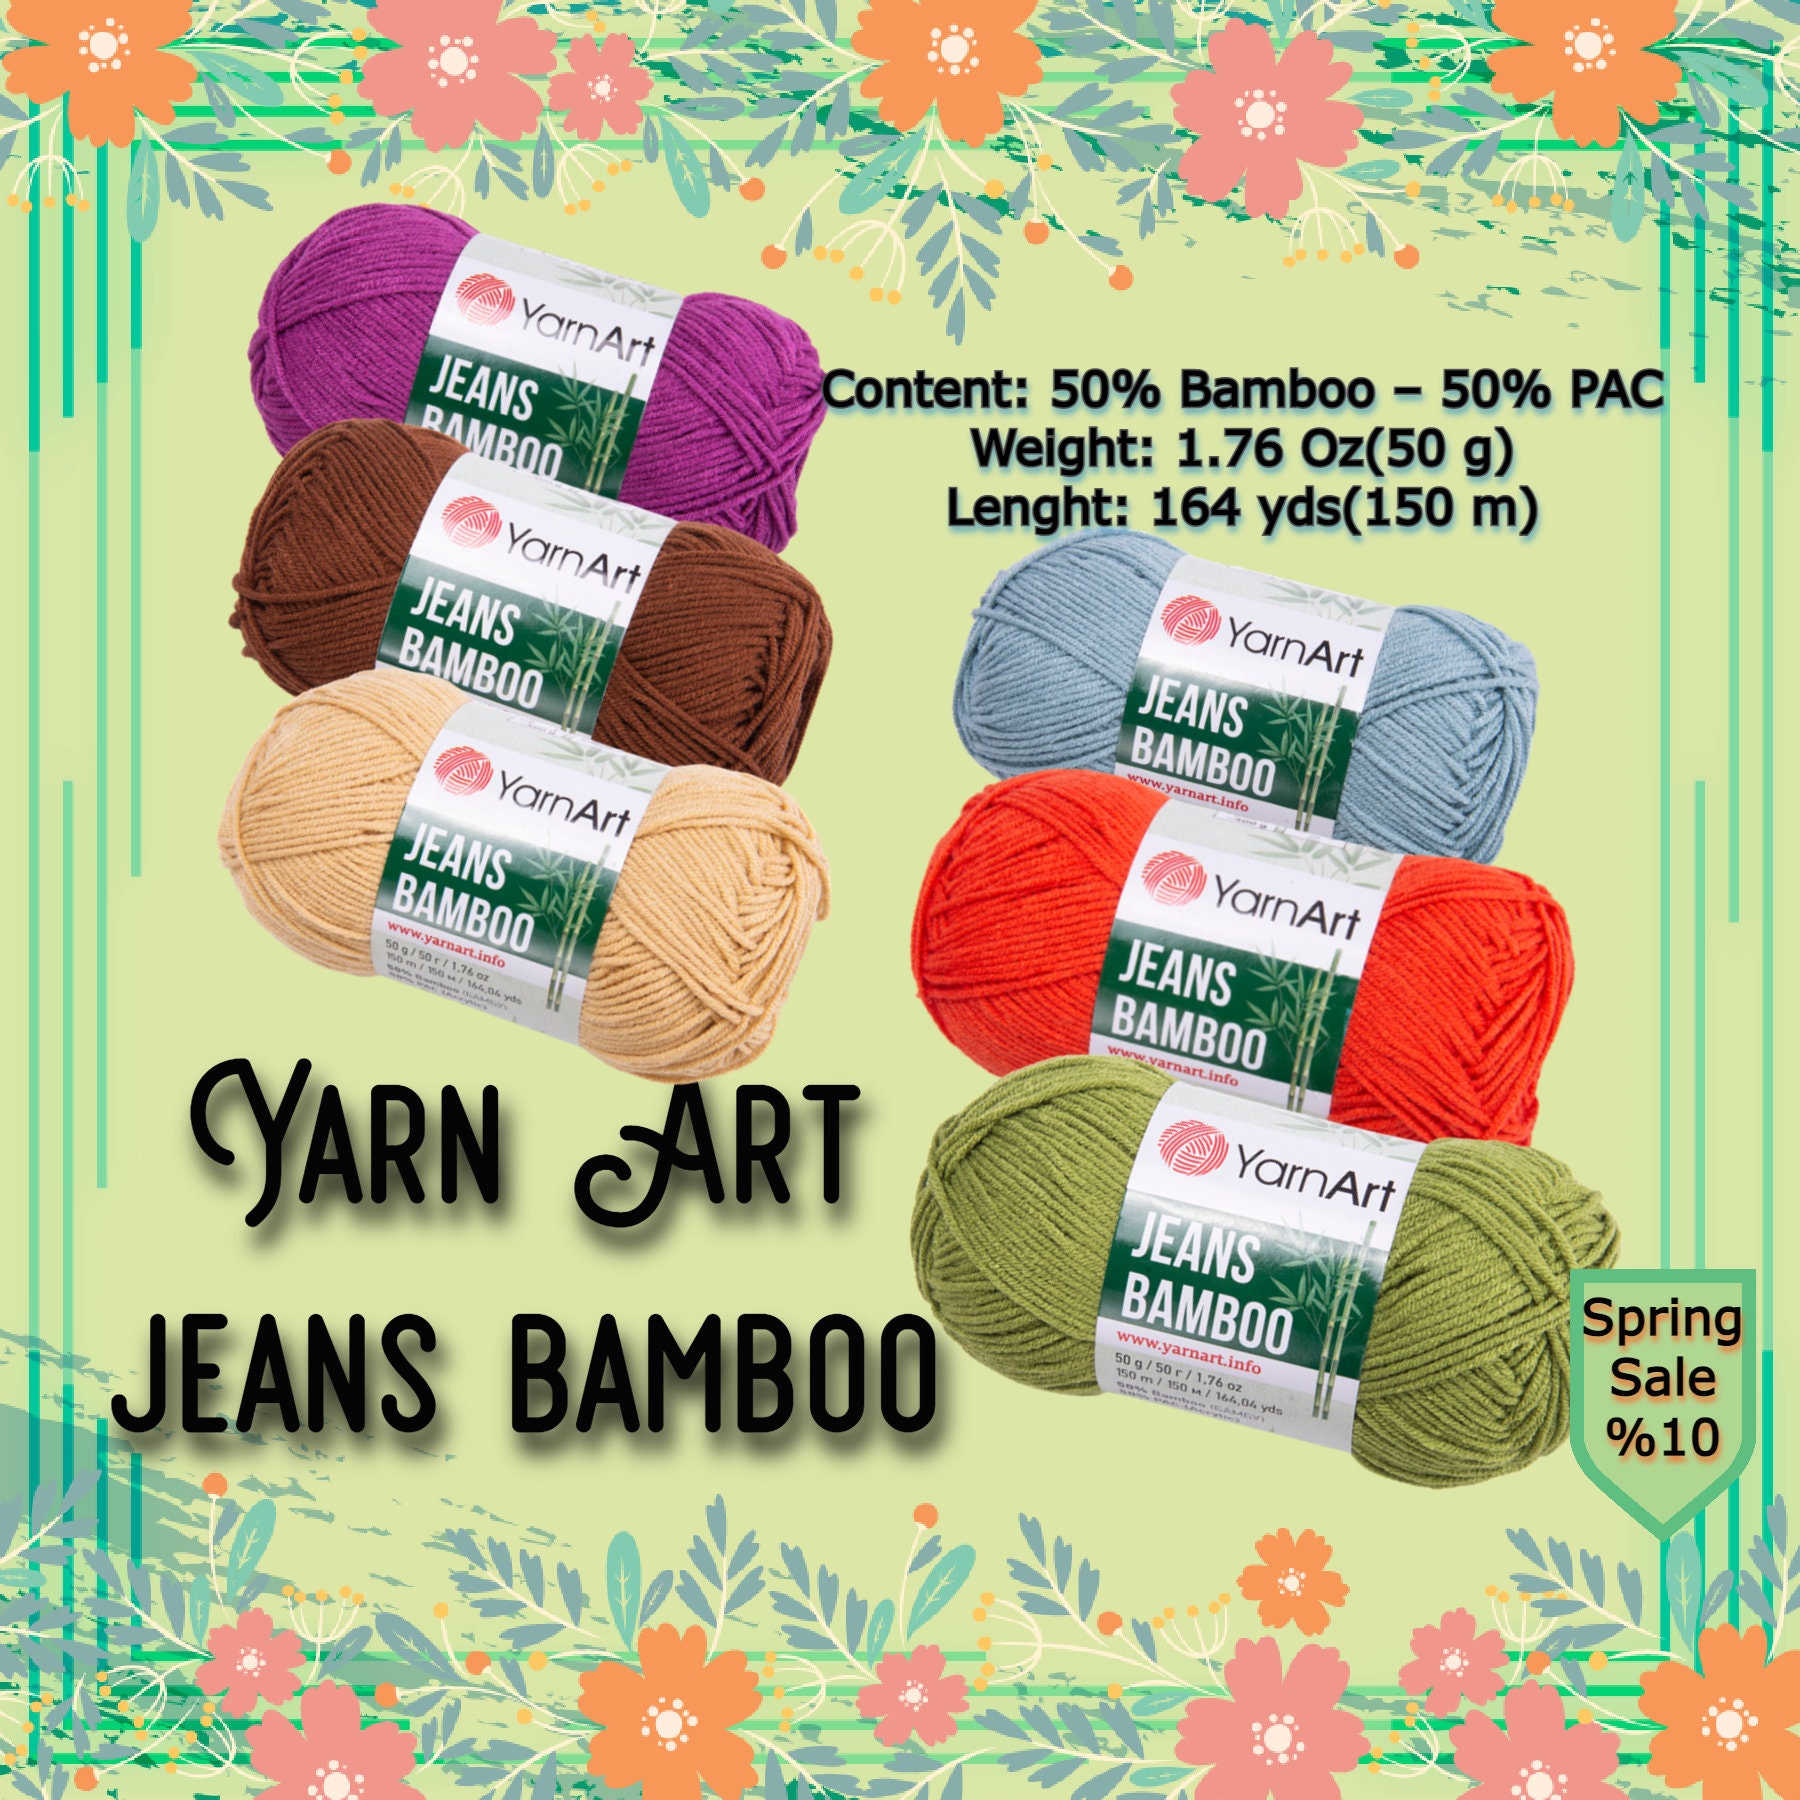 Yarn Art Jeans Bamboo